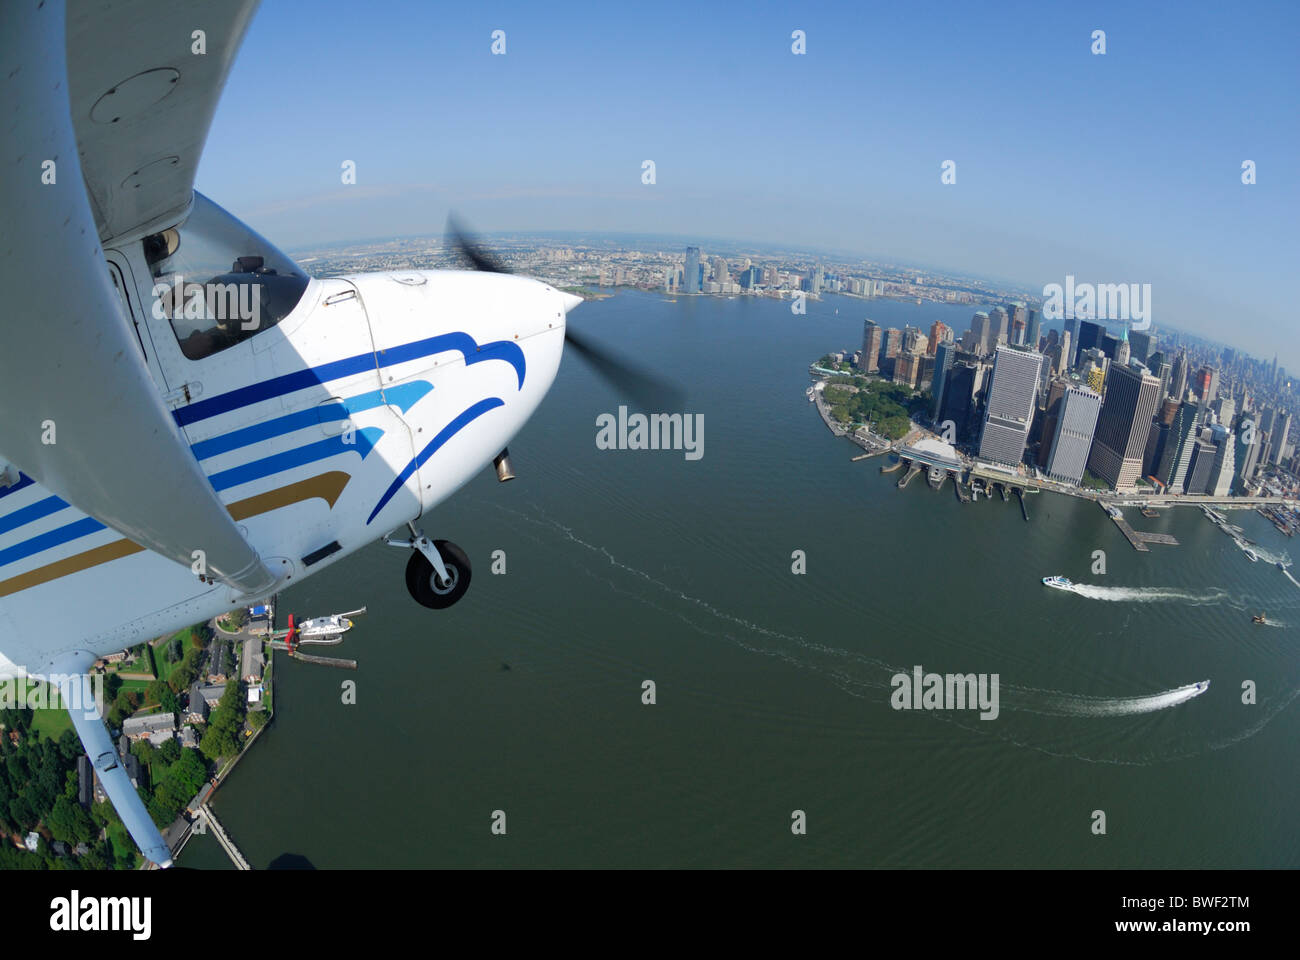 Una avioneta Cessna 172 sobrevolando Manhattan y el río Hudson, Nueva York, EE.UU. Foto de stock